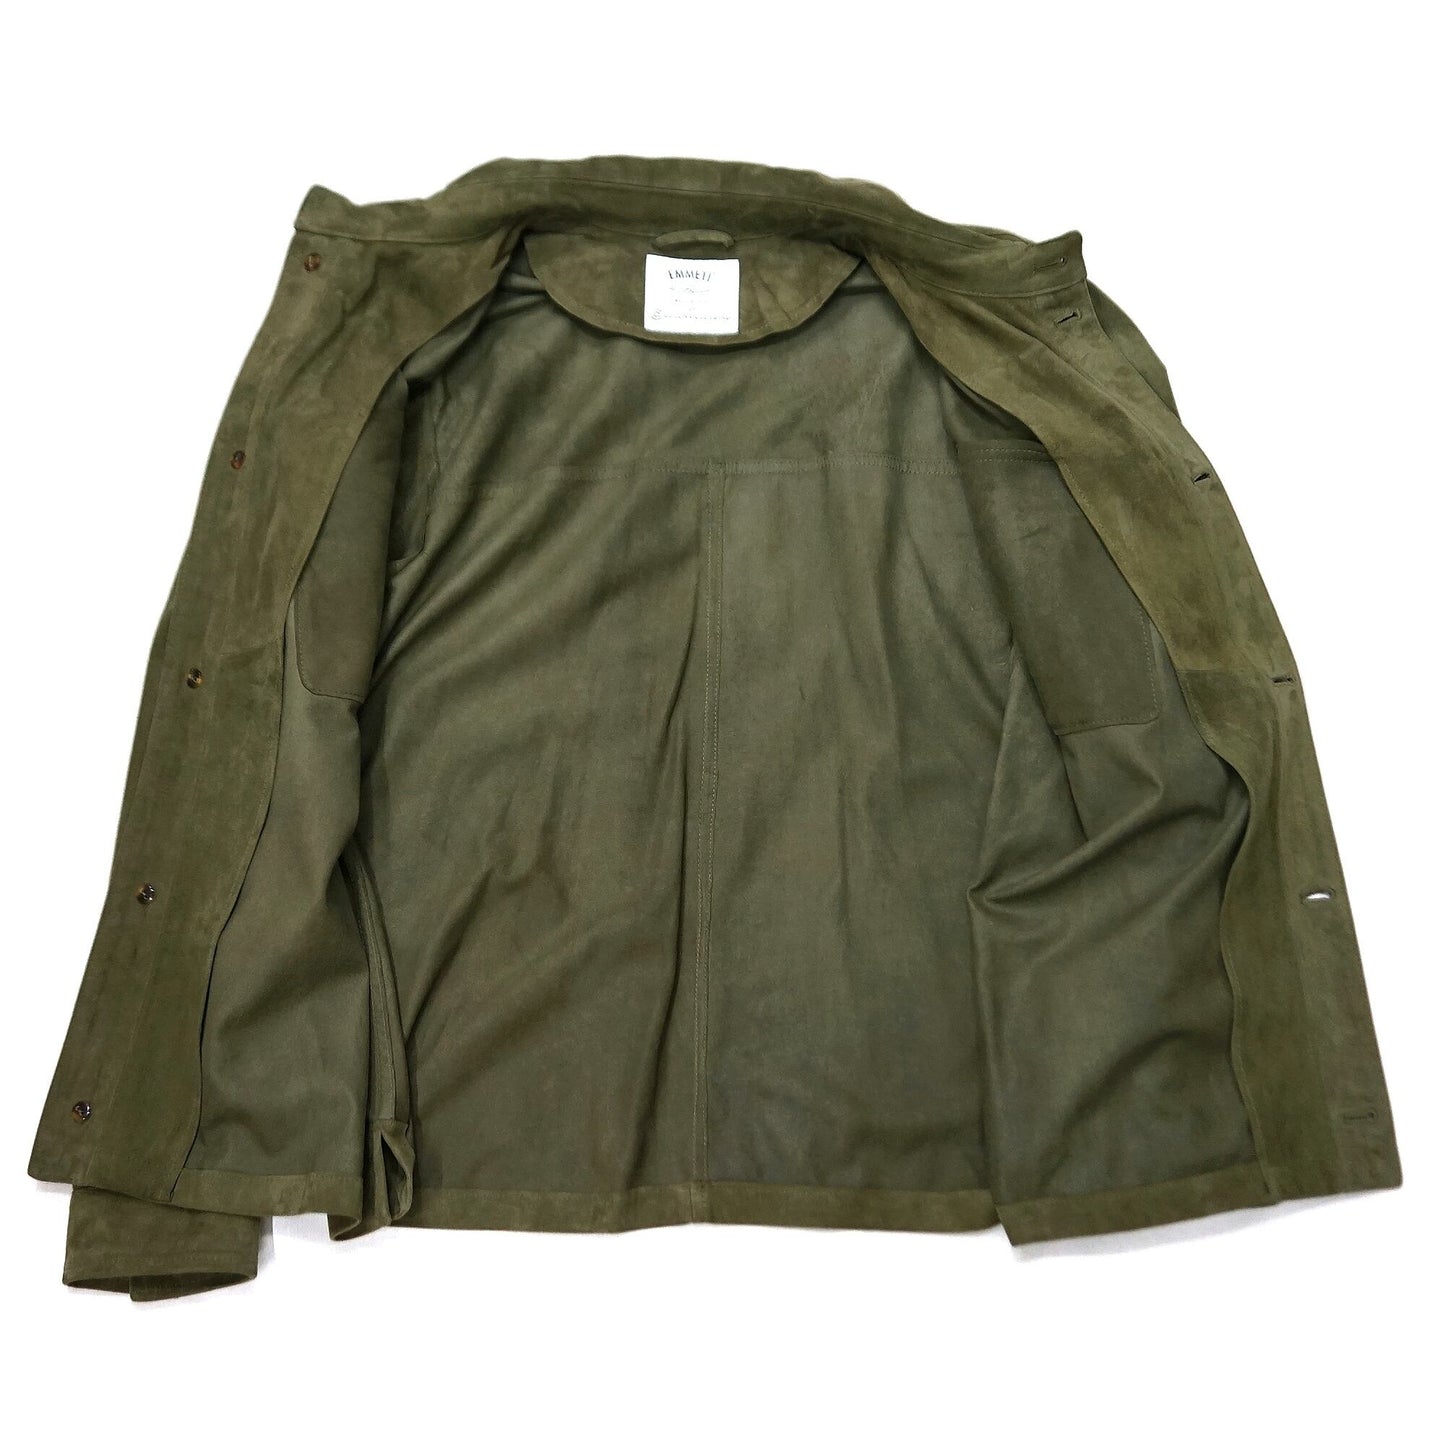 Emmeti for COLONY CLOTHING Travel leather jacket "NOLAN" OLIVE